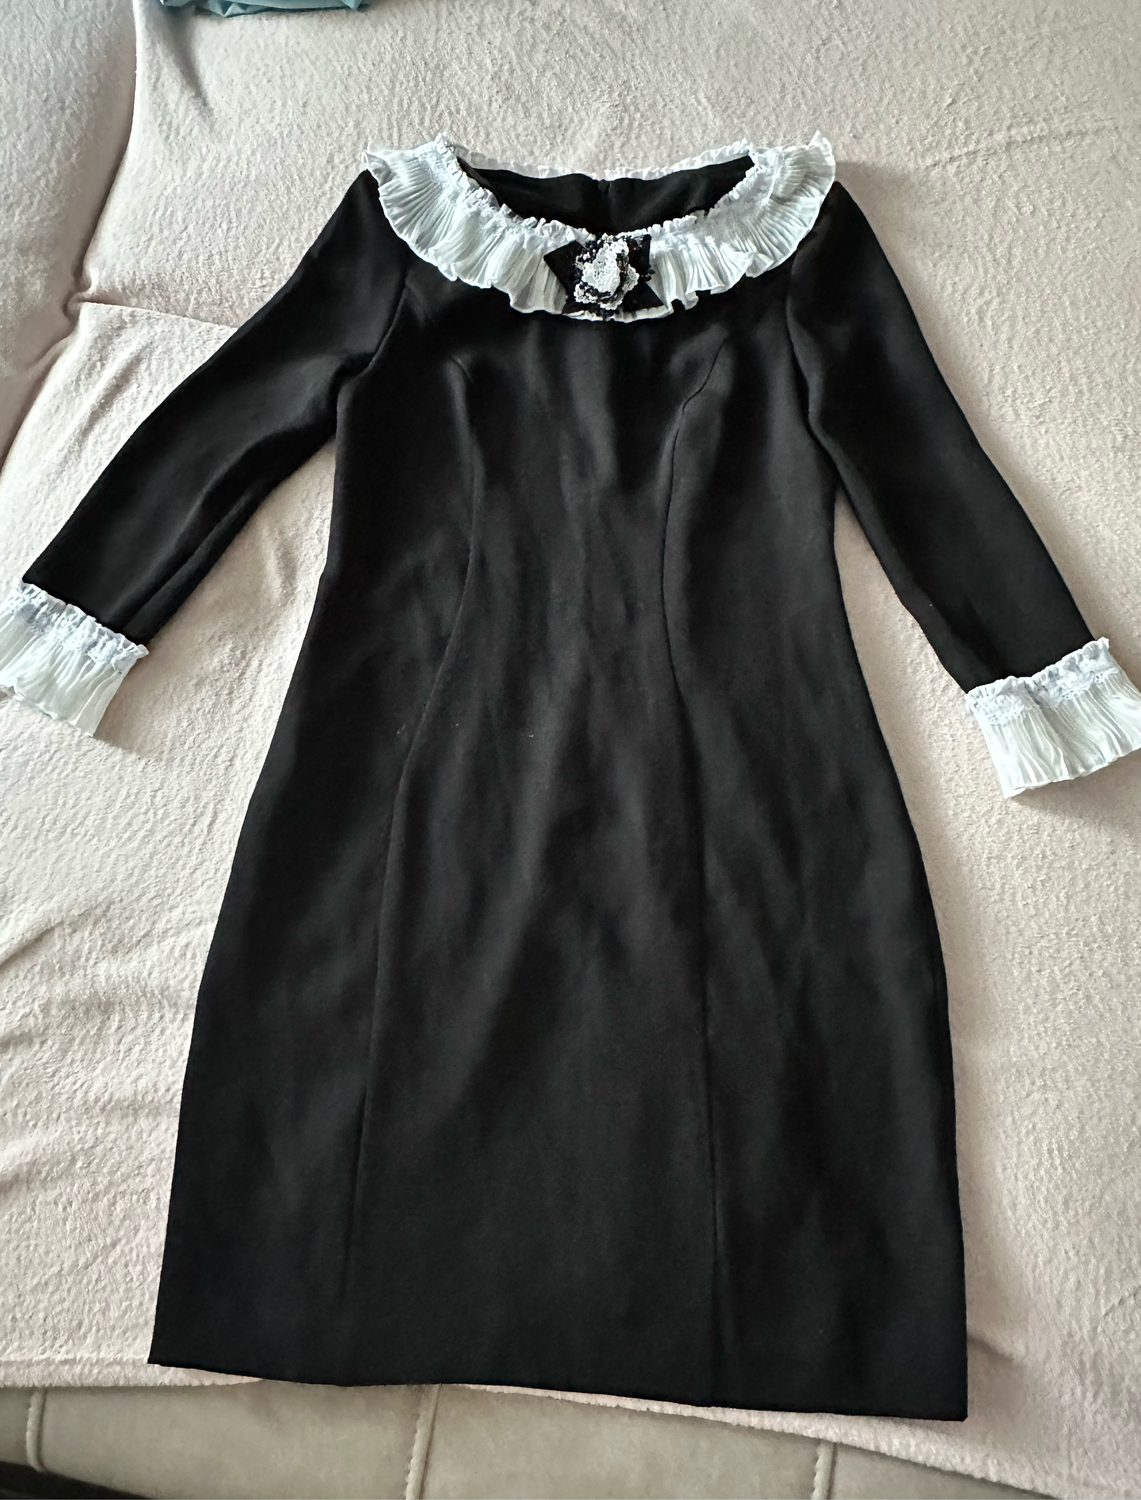 Photo №1 к отзыву покупателя Ekaterina о товаре Классика чёрное платье футляр